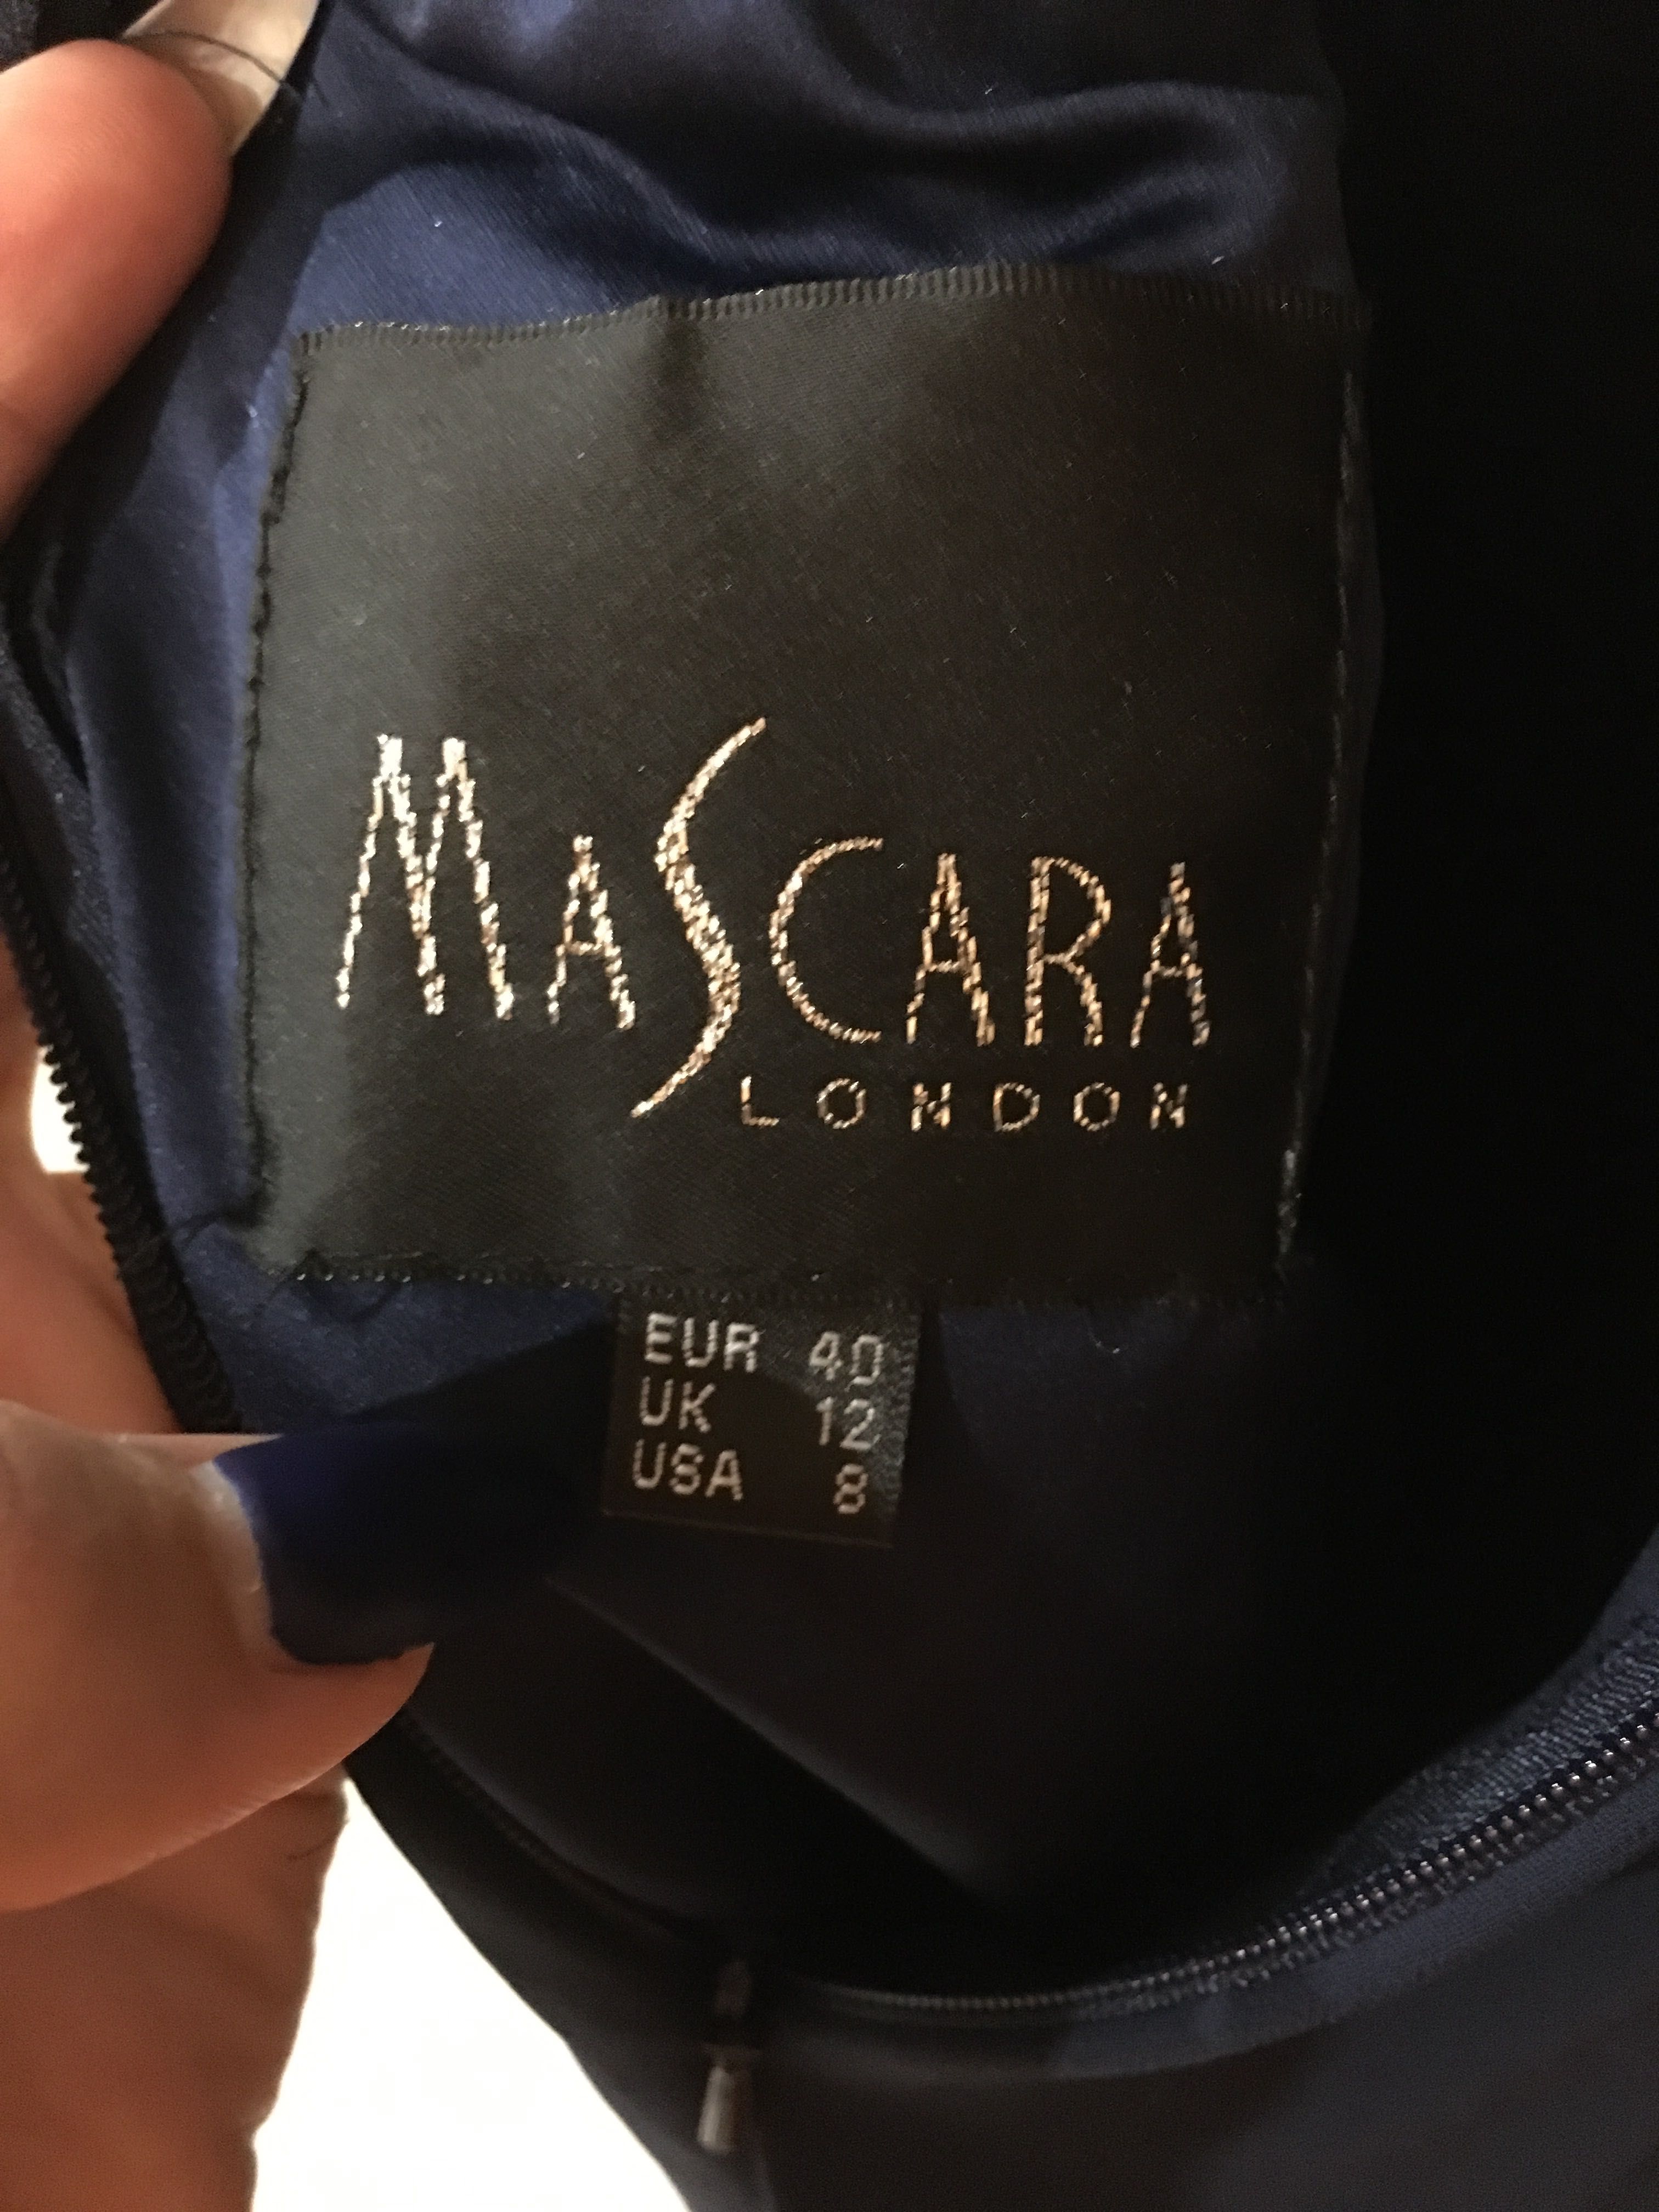 Рокля Mascara цвят navy носена веднъж за 1 час